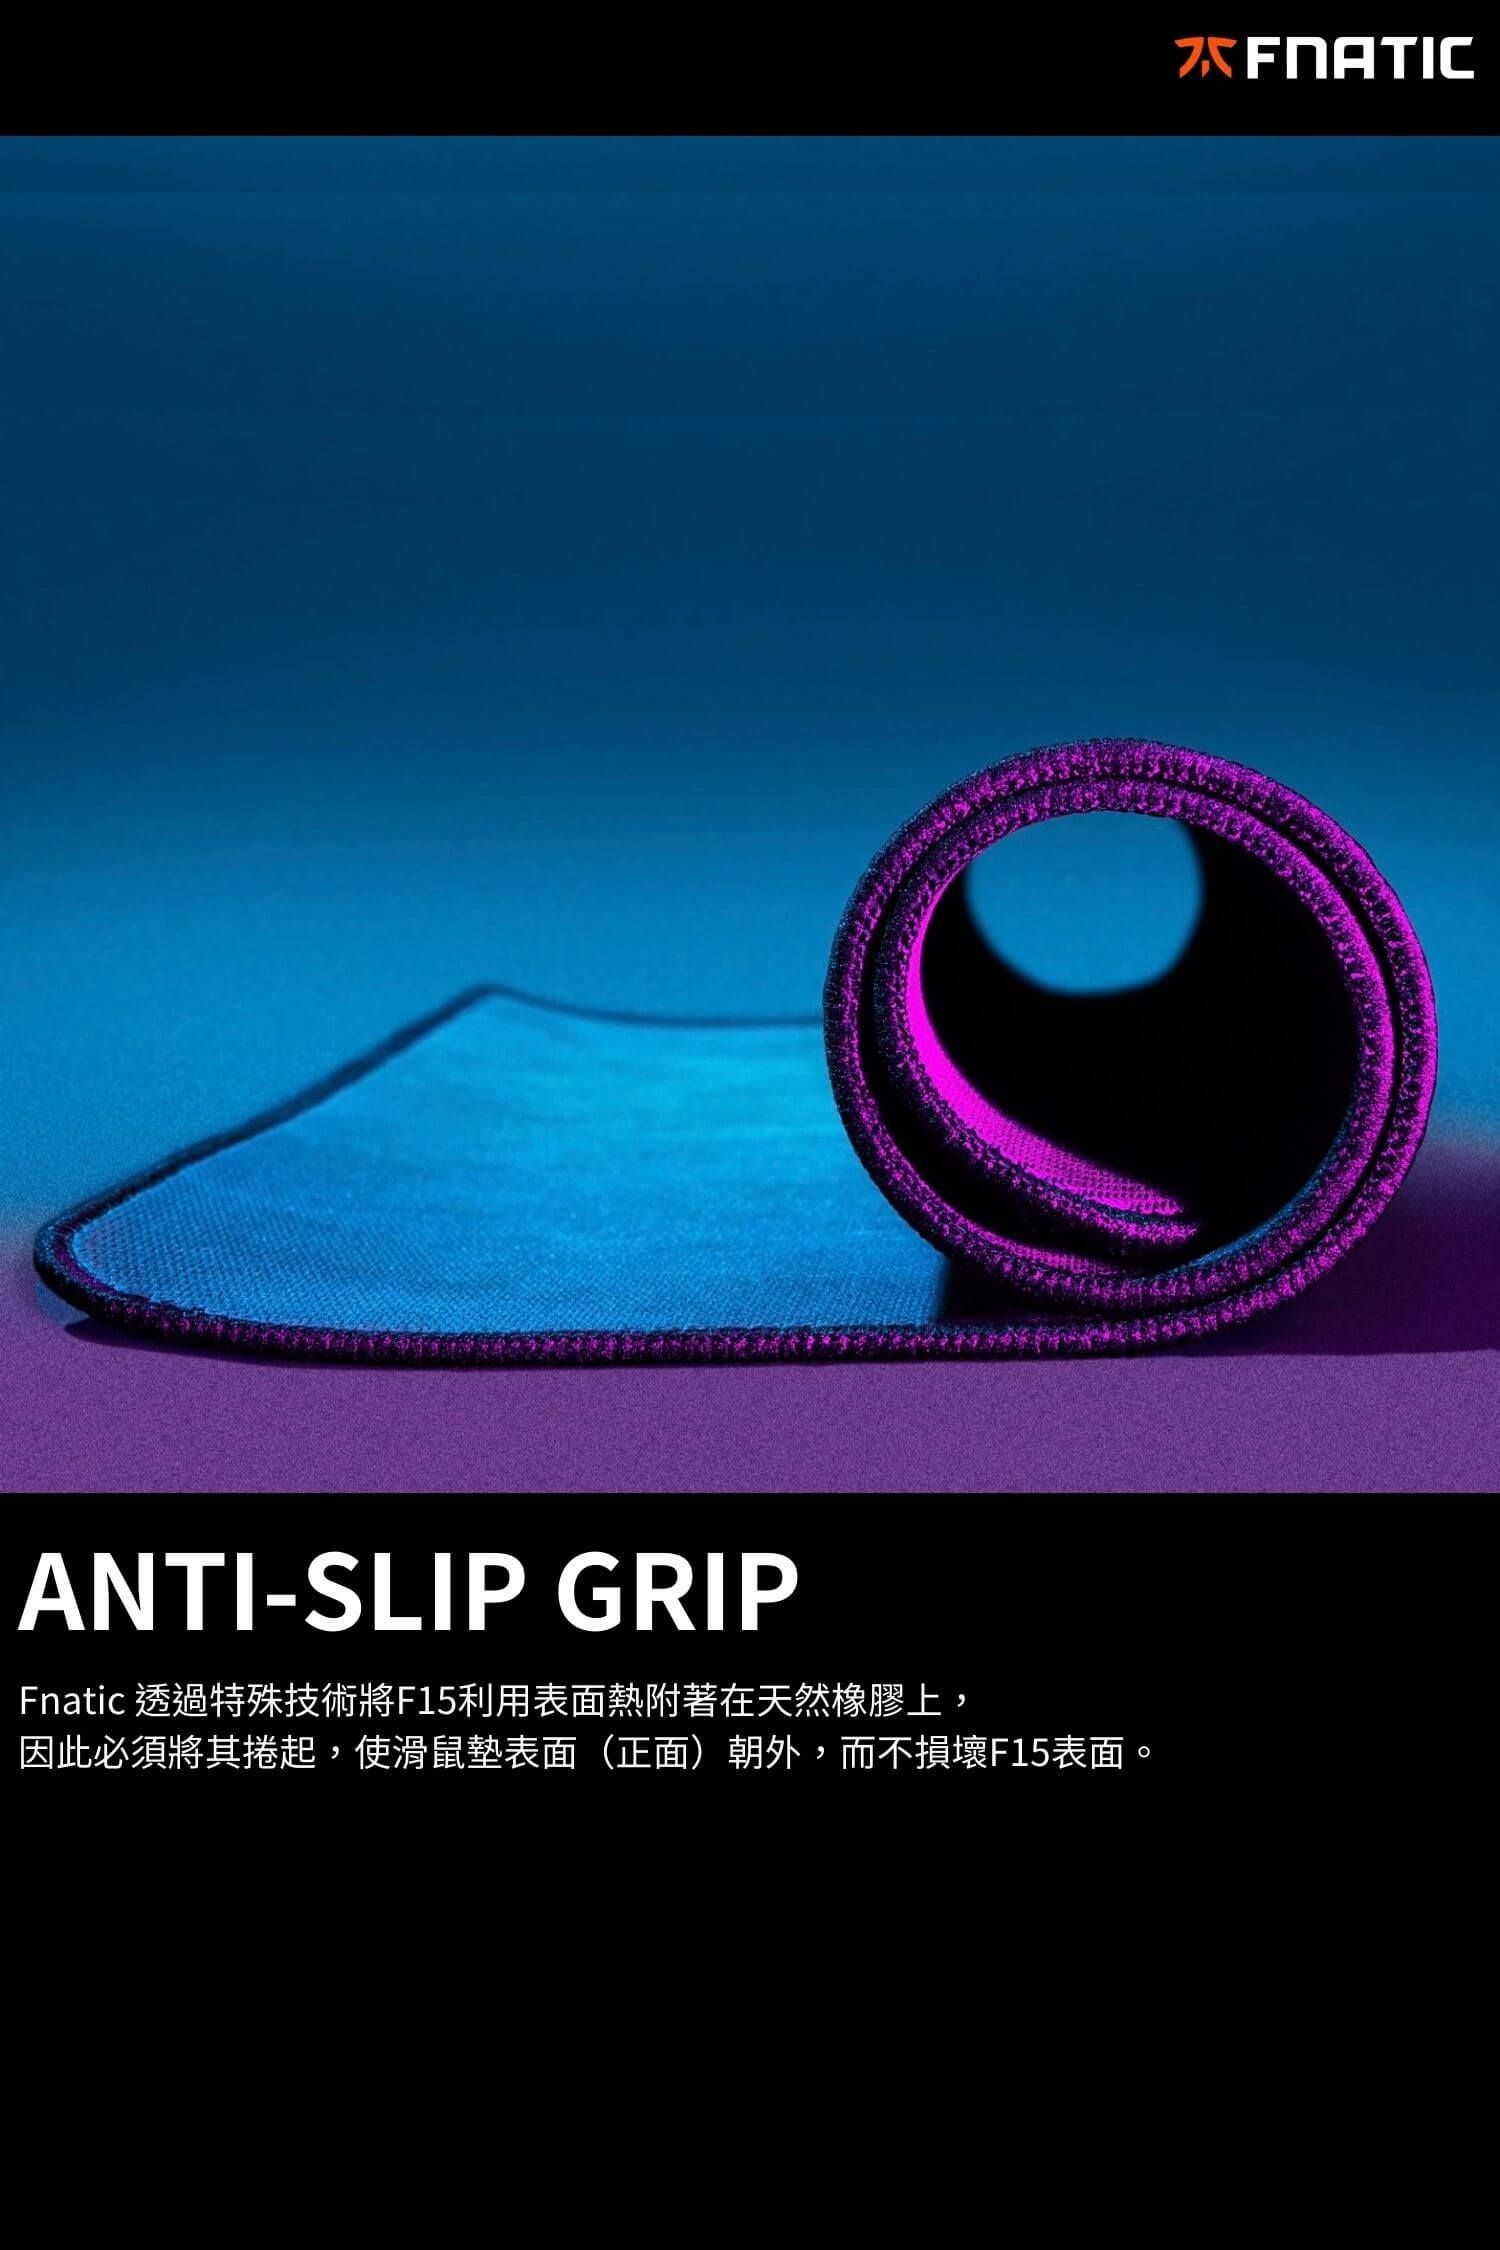 ANTI-SLIP GRIPFnatic 透過特殊技術將F15利用表面熱附著在天然橡膠上,因此必須將其捲起,使滑鼠墊表面(正面)朝外,而不損壞F15表面。